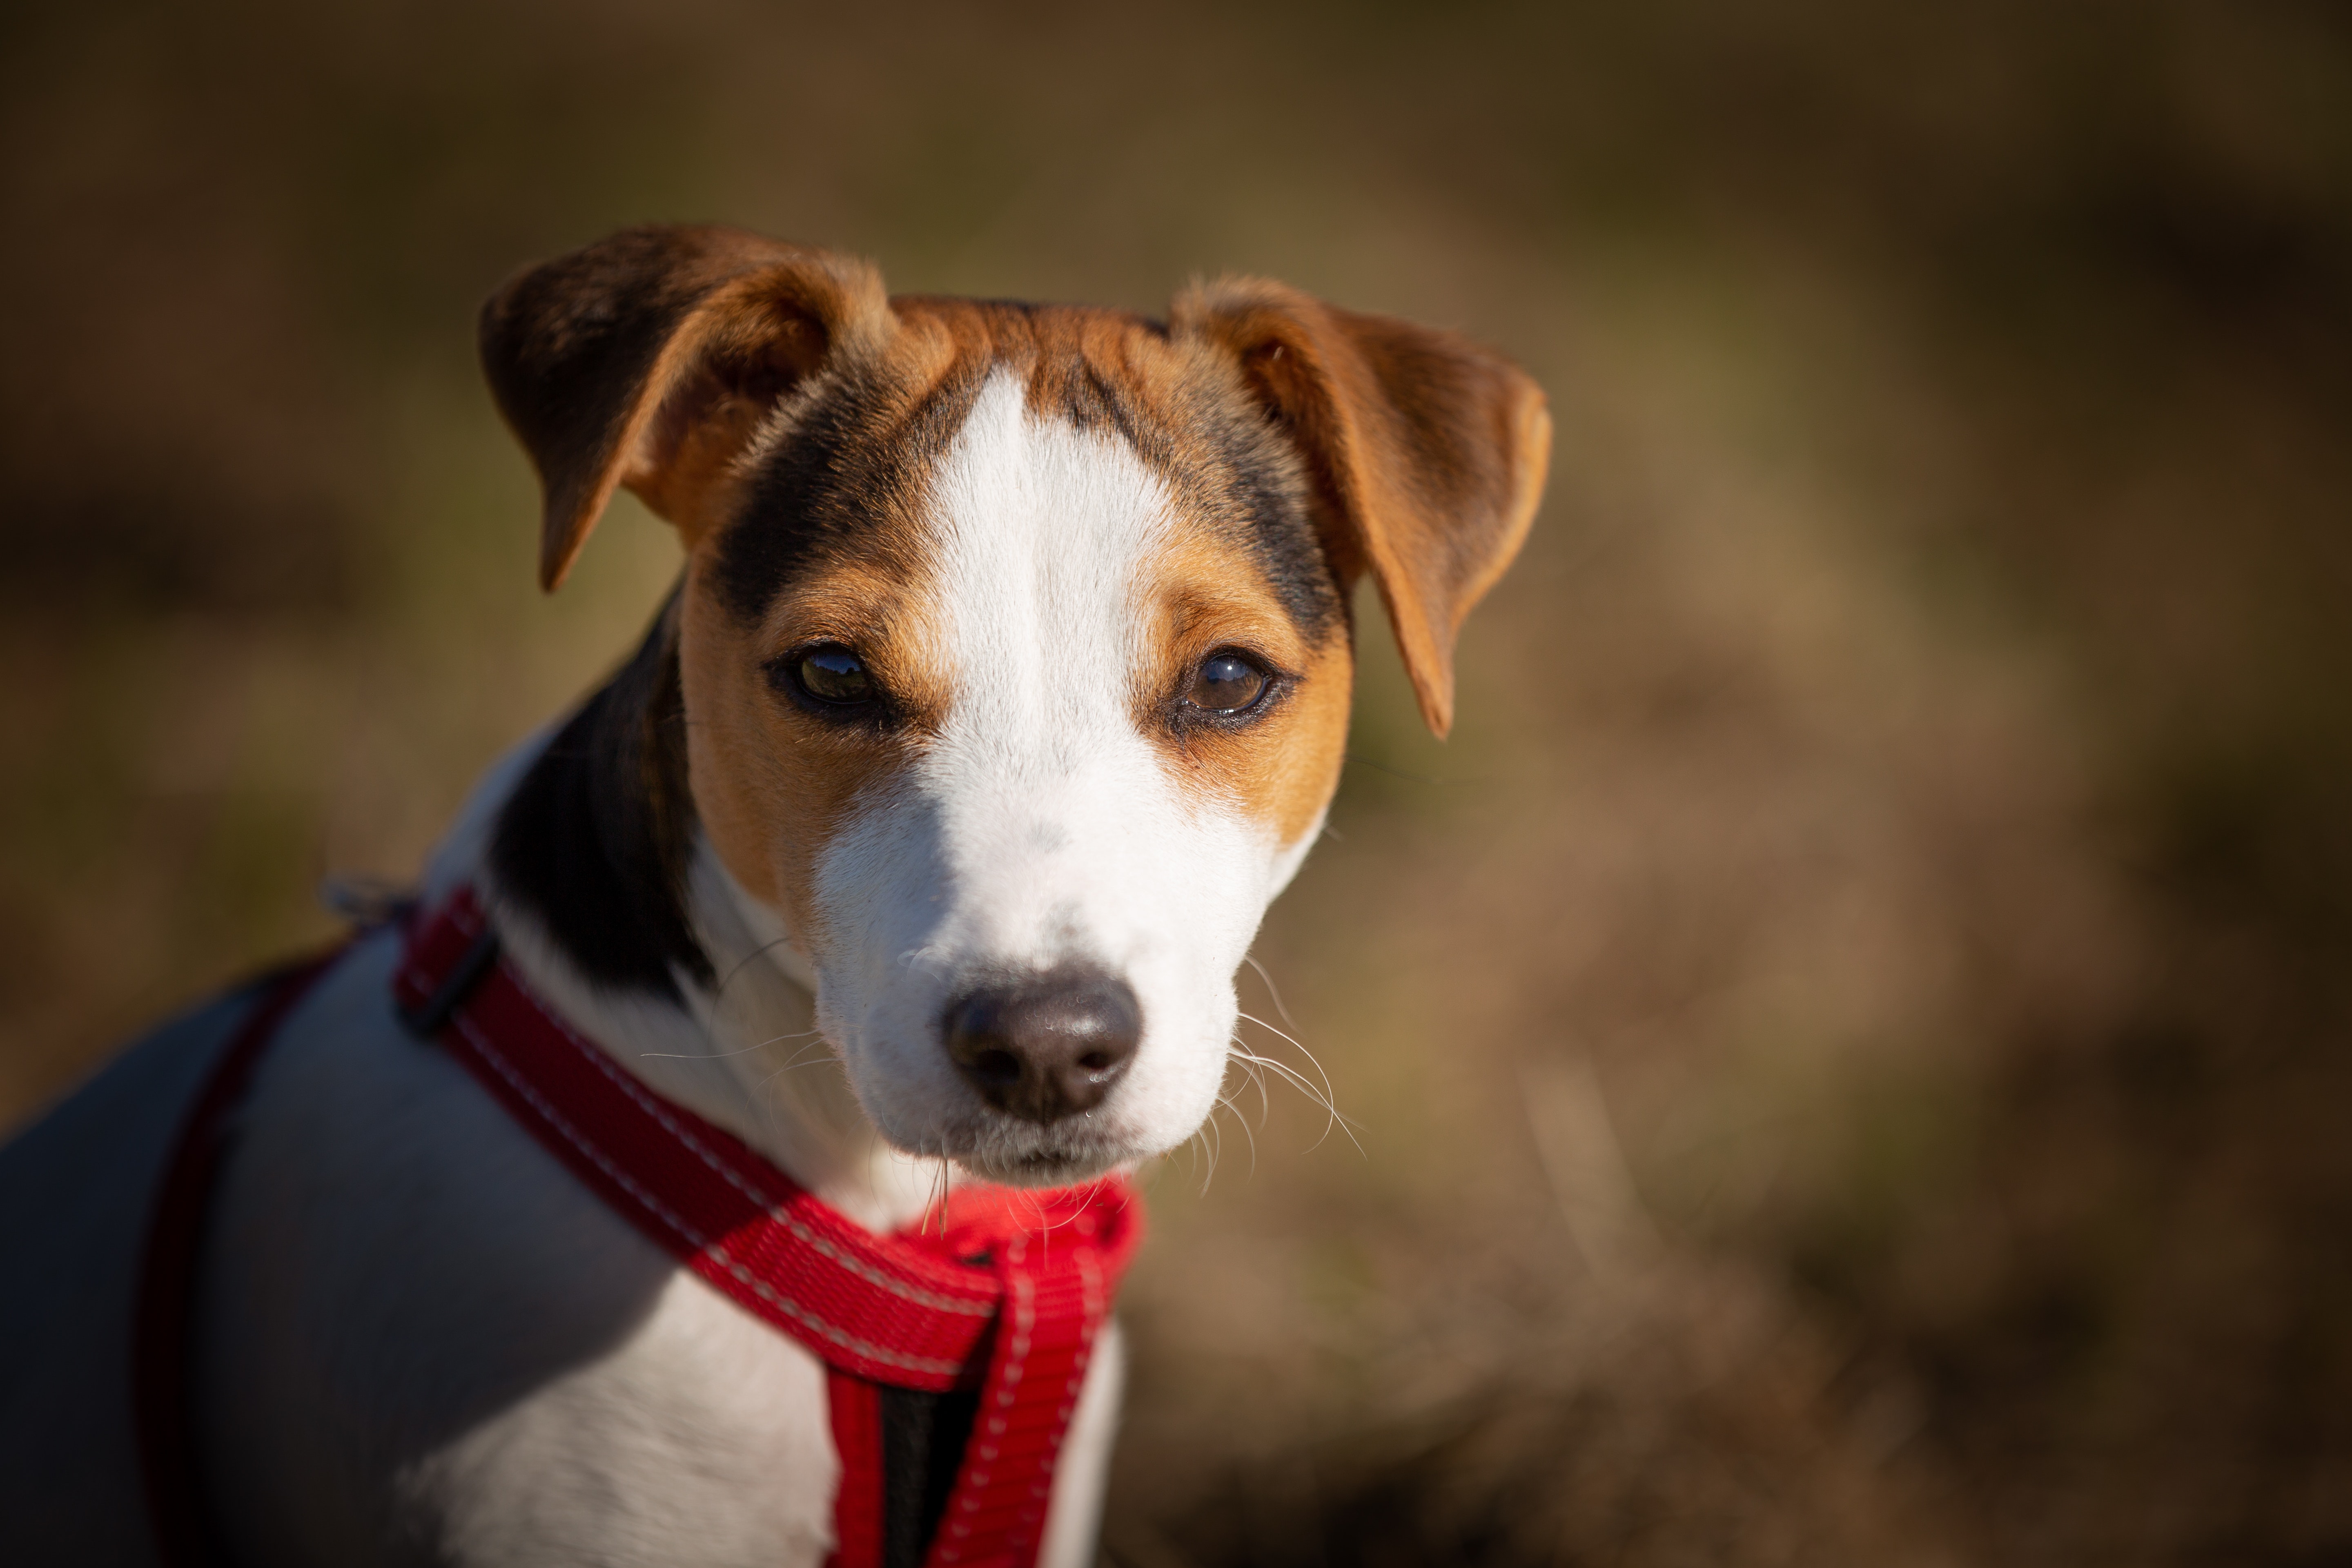 Jack Russell Terriers : 'द सन'च्या अहवालाविषयी सांगायचे तर, जगातील सर्वात जास्त काळ जगणारा कुत्रा जॅक रसेल टेरियर्स आहे.